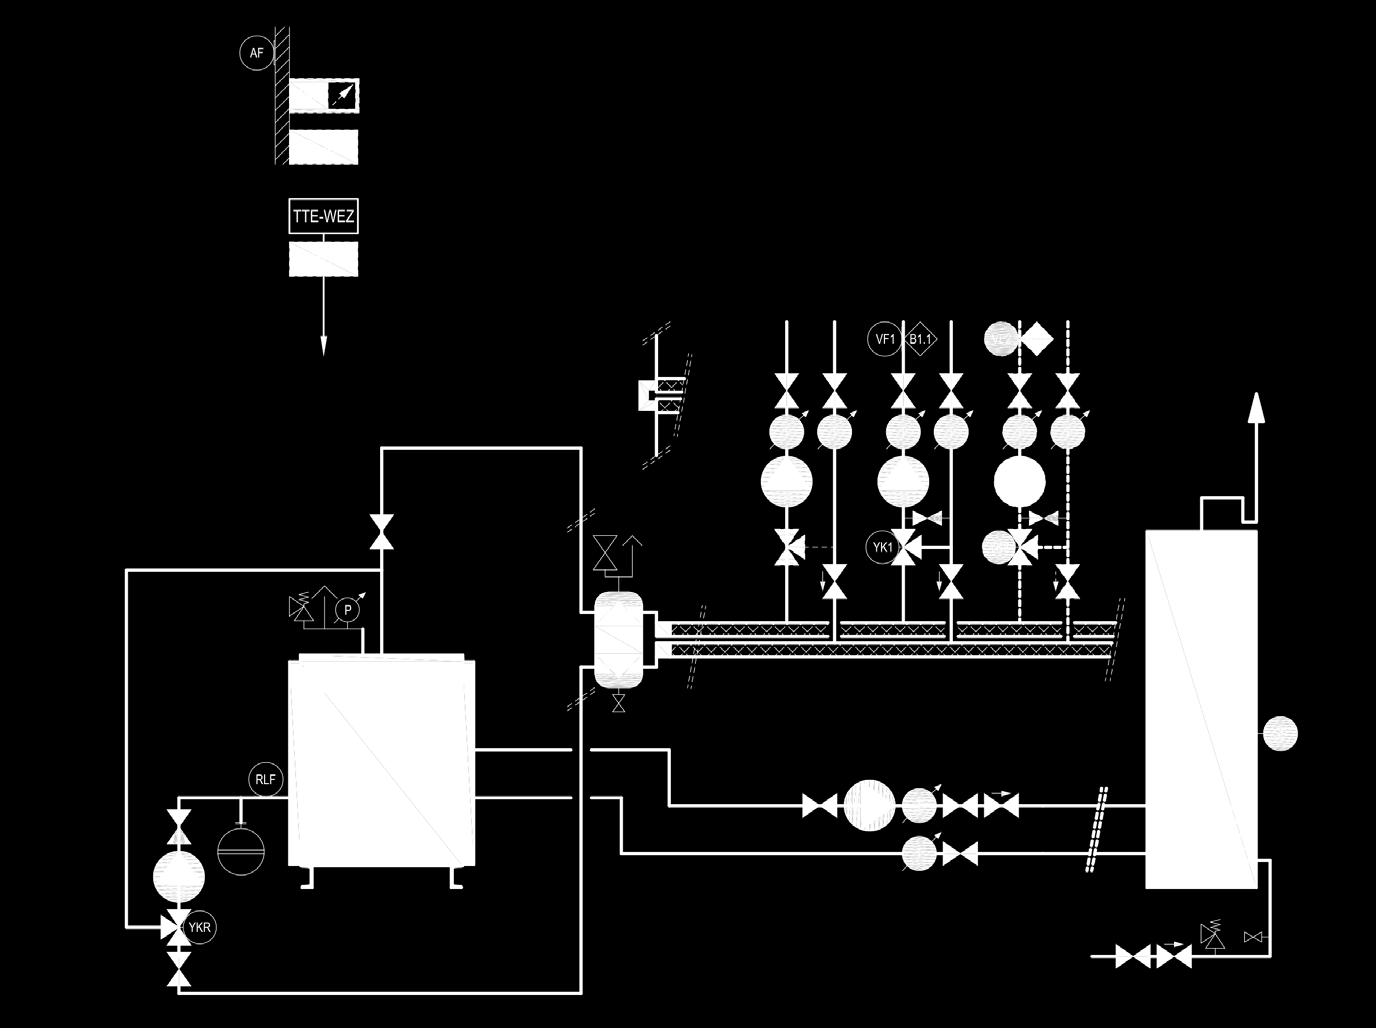 Exemples d utilisation (130-360) Chaudière fioul/gaz avec pompe principale contrôle de la température de retour (constant) séparation hydraulique chauffe-eau 1 circuit direct et 1-.